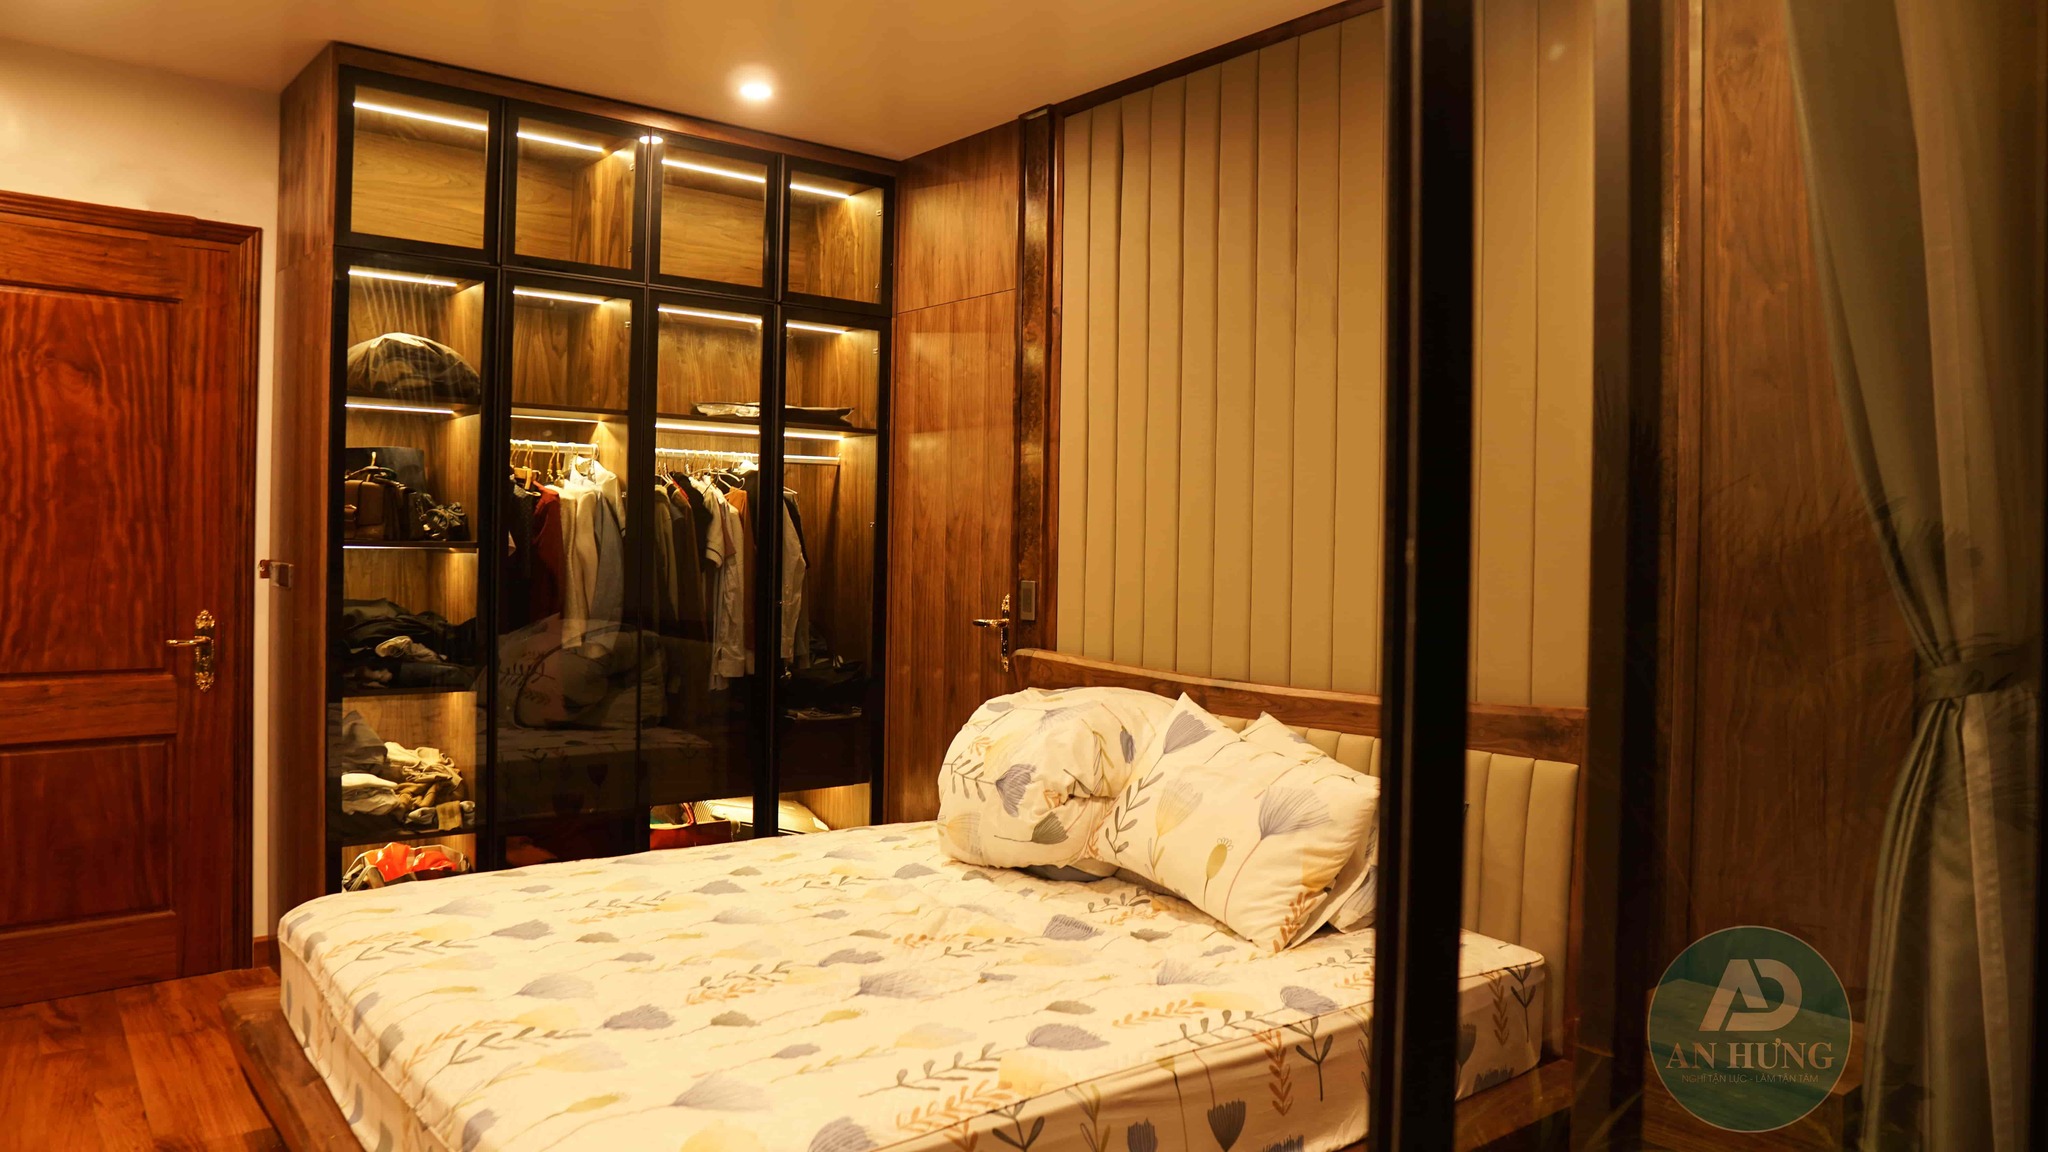 Phòng ngủ ấm cúng với nội thất từ cây gỗ óc chó